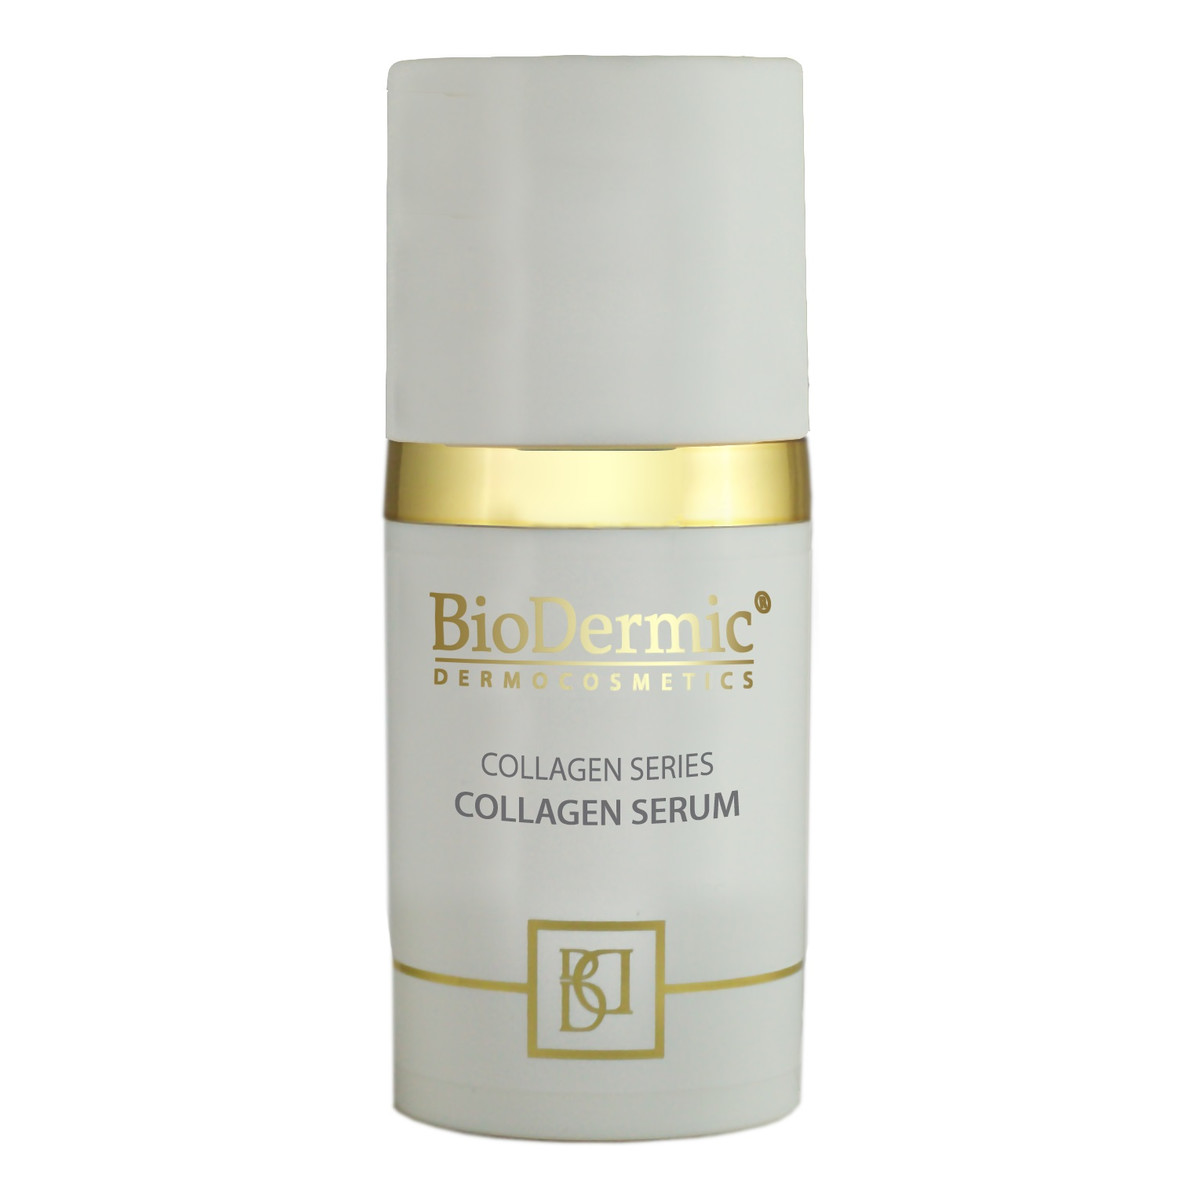 Biodermic Collagen Series Callagen Serum serum kolagenowe z kolagenem morskim 30ml